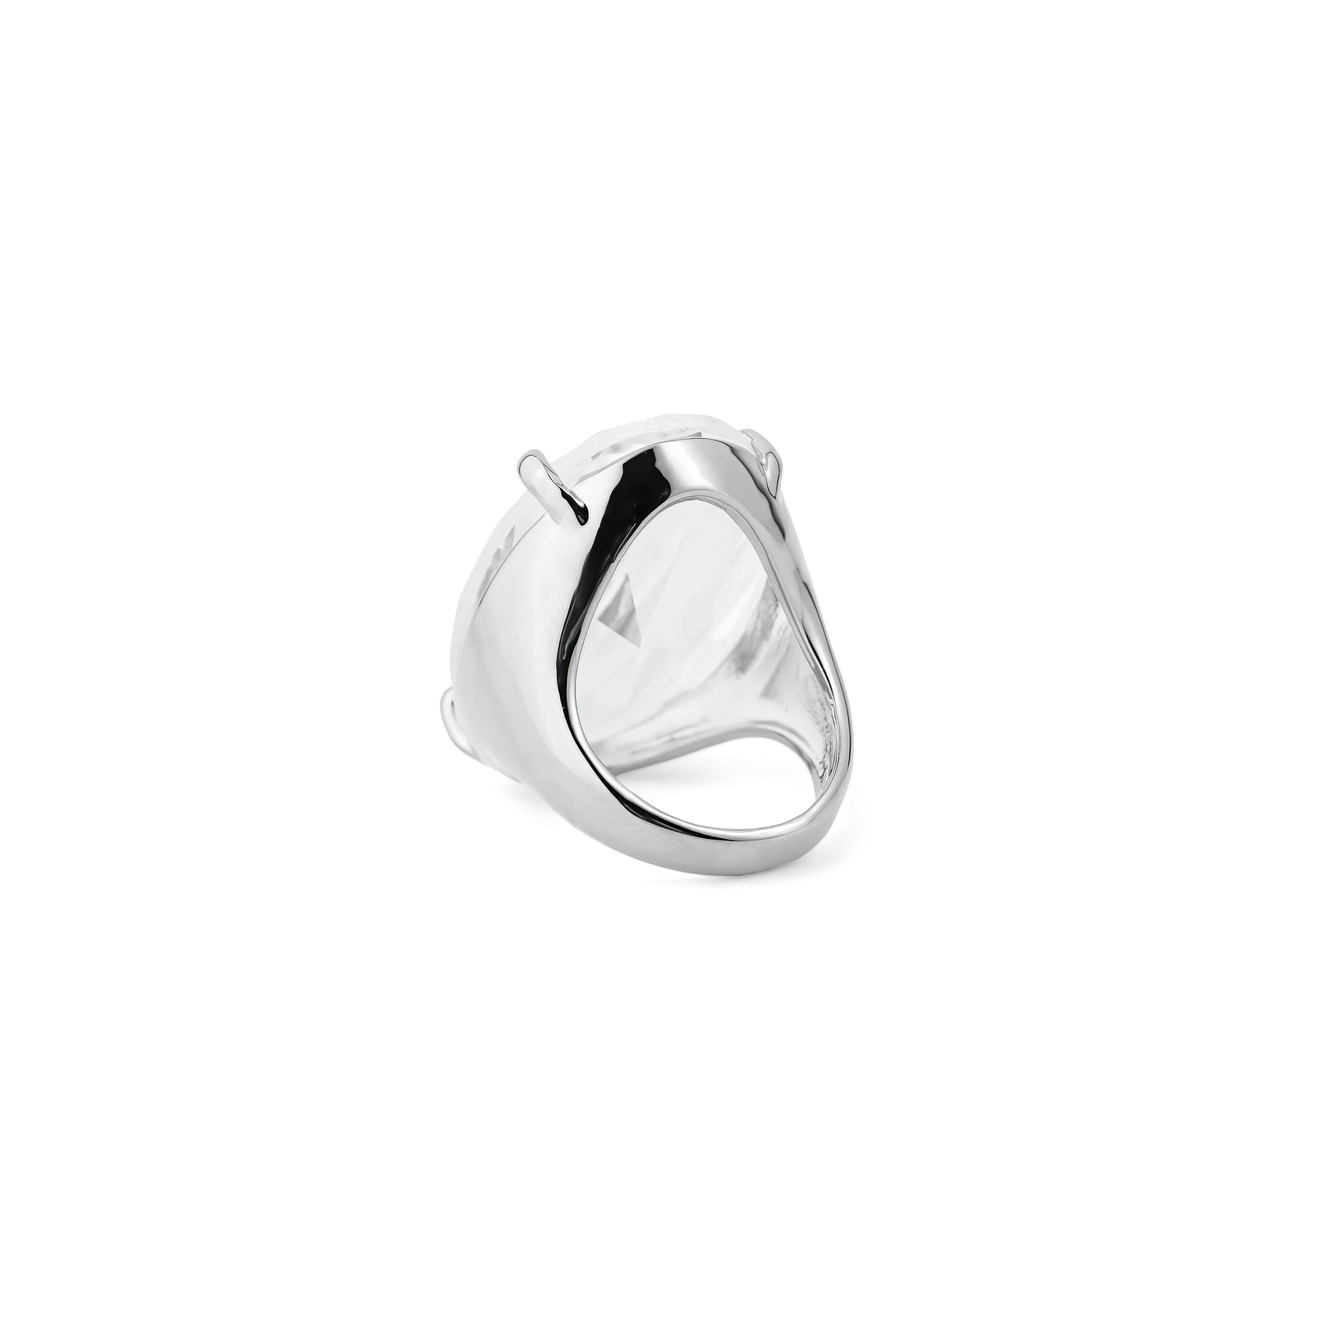 Herald Percy Серебристое кольцо с овальным кристаллом herald percy серебристое фигурное кольцо с красным сердцем